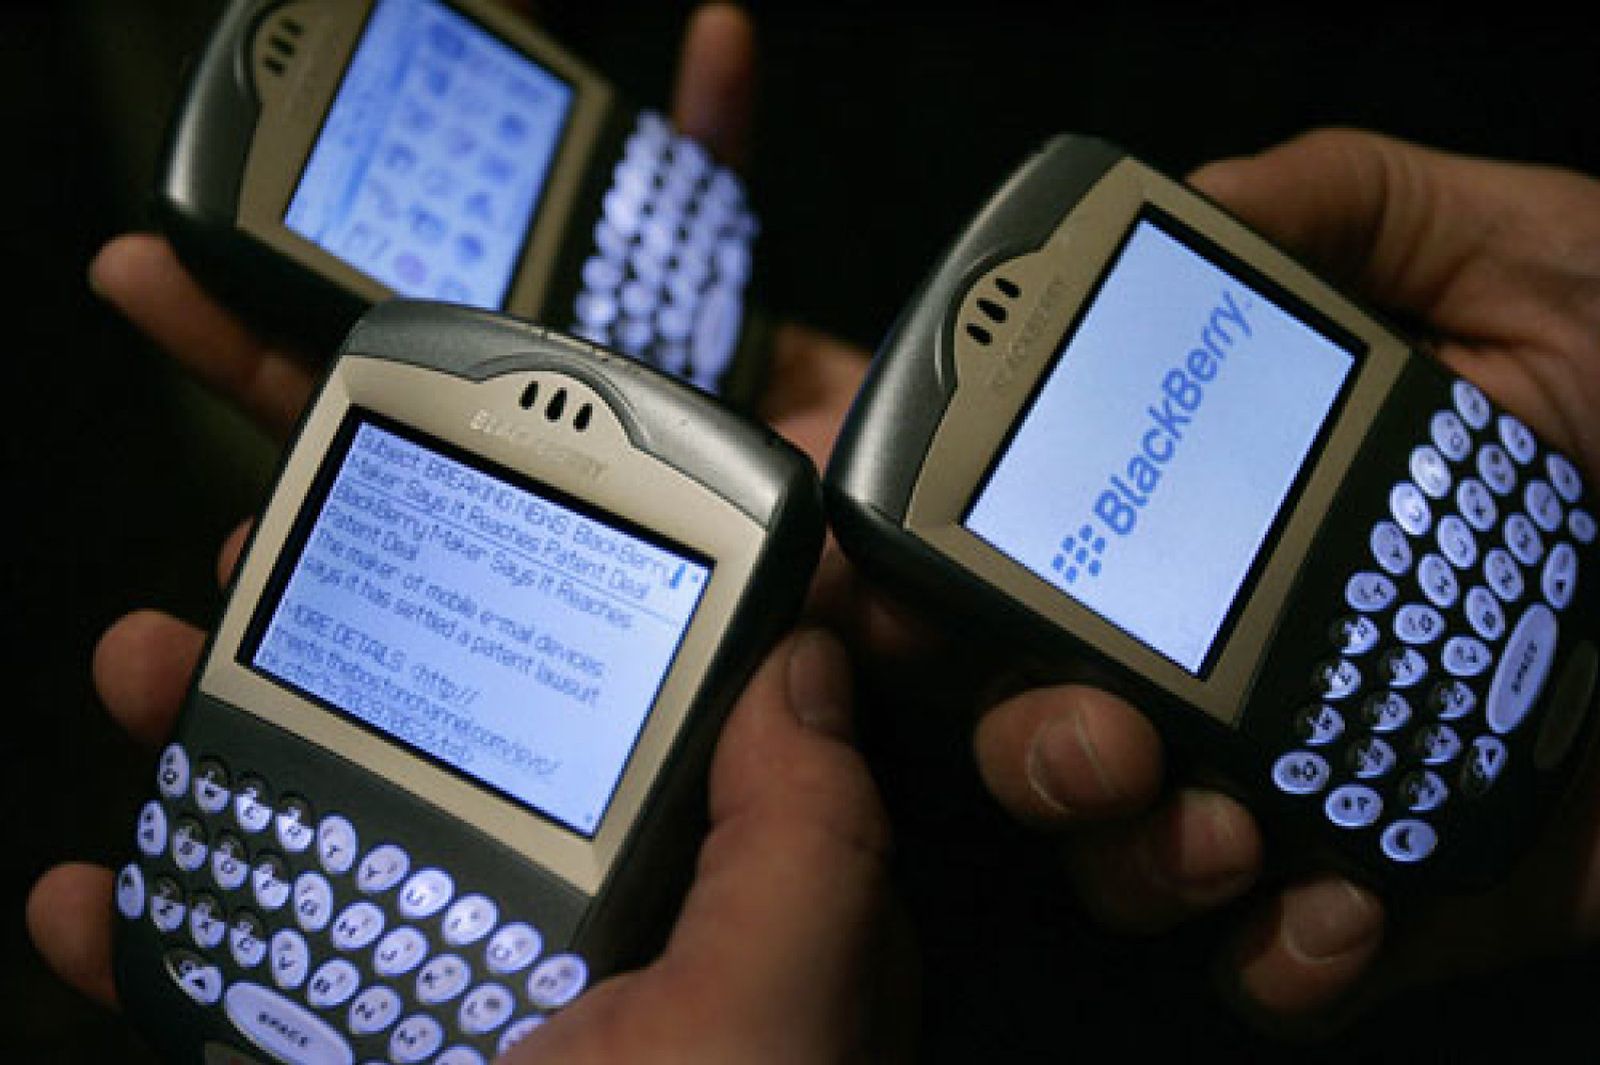 Foto: El 'sorpasso' de BlackBerry a Windows Mobile revoluciona la telefonía móvil